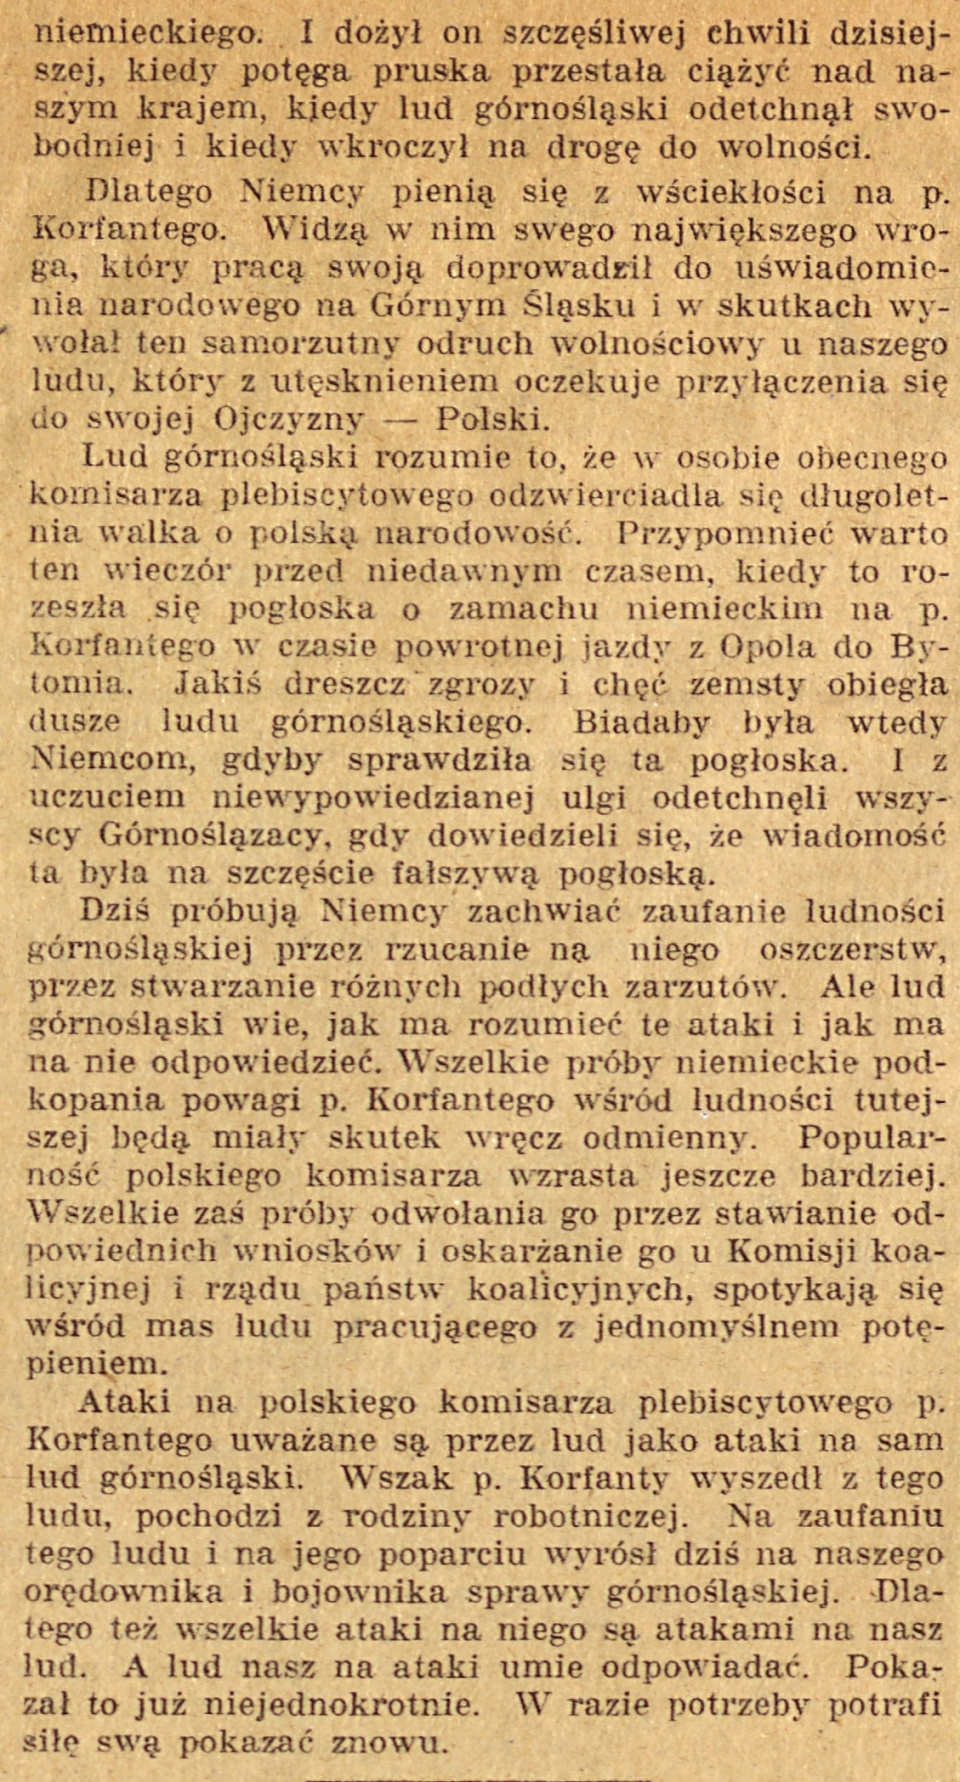 Bytom, Olesno, Opole, Gazeta Opolska cz.2 (17.12.1920)